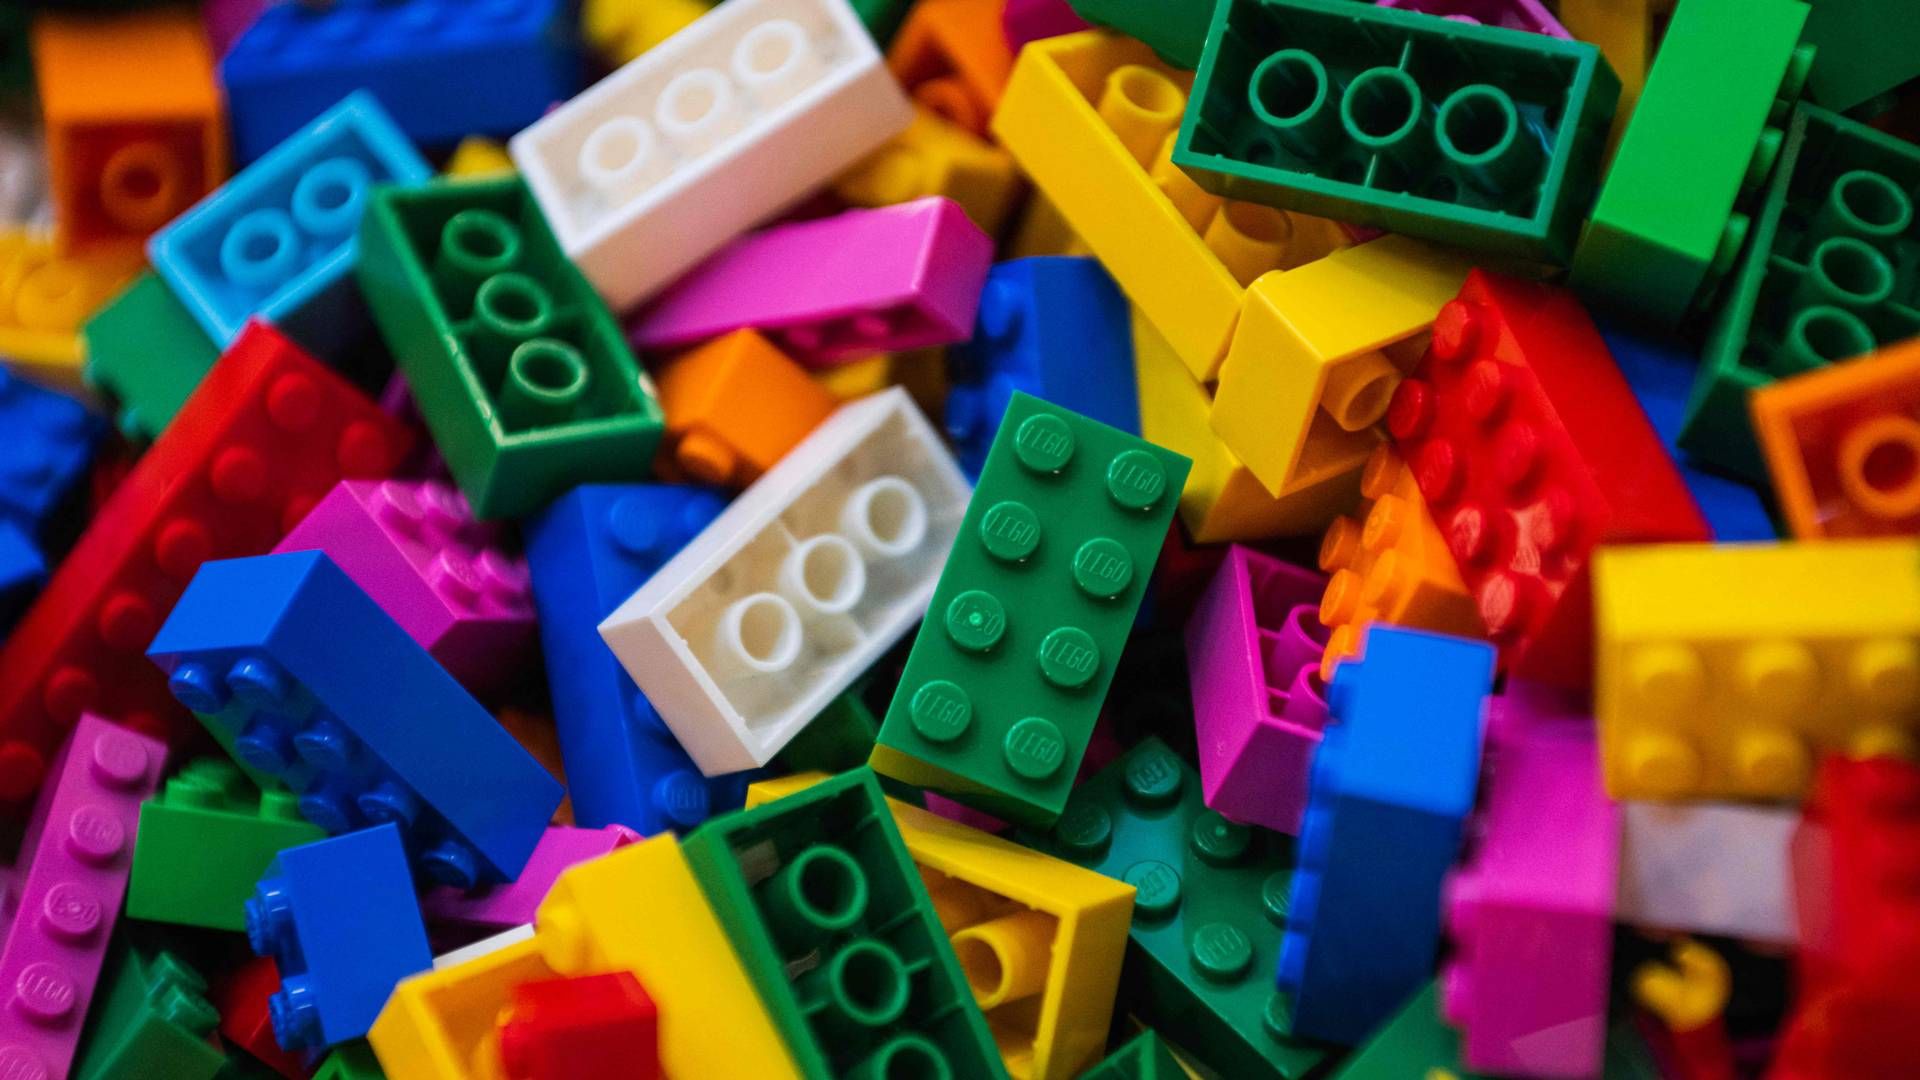 Lego lave klodser af genanvendte plastflasker — CleantechWatch